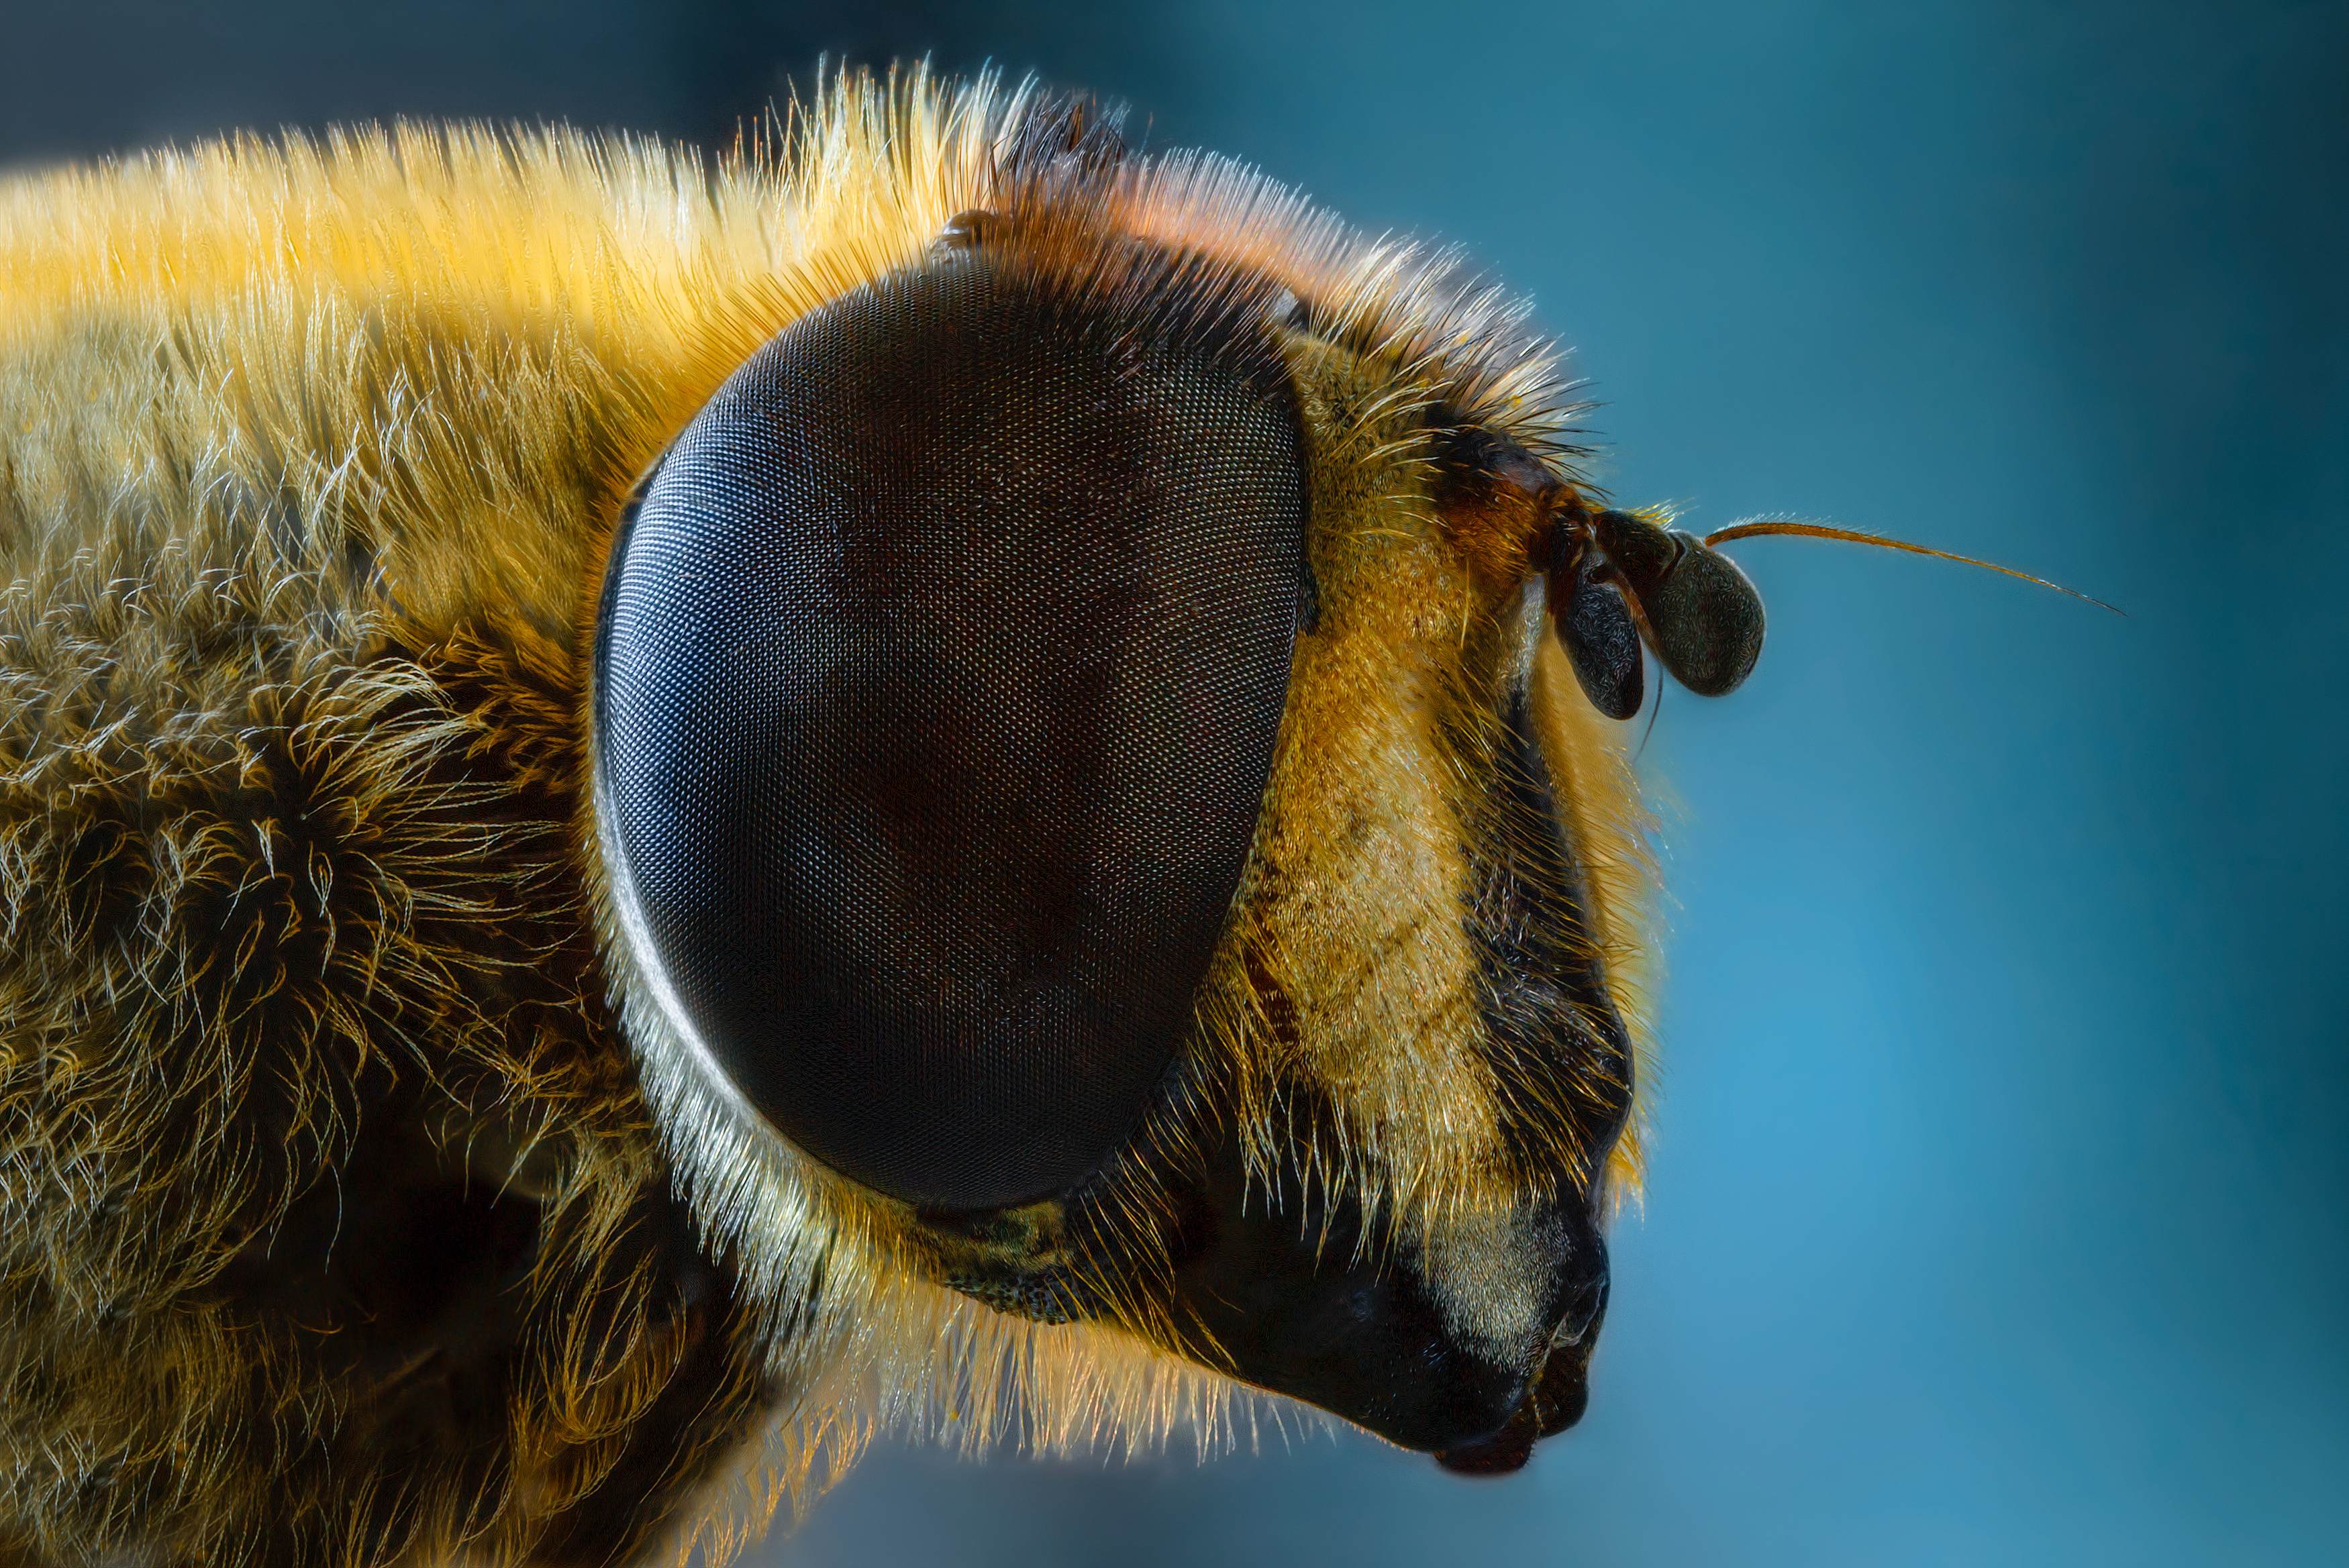 муха насекомое портрет глаза природа фон боке макро фото, Еремеев Дмитрий